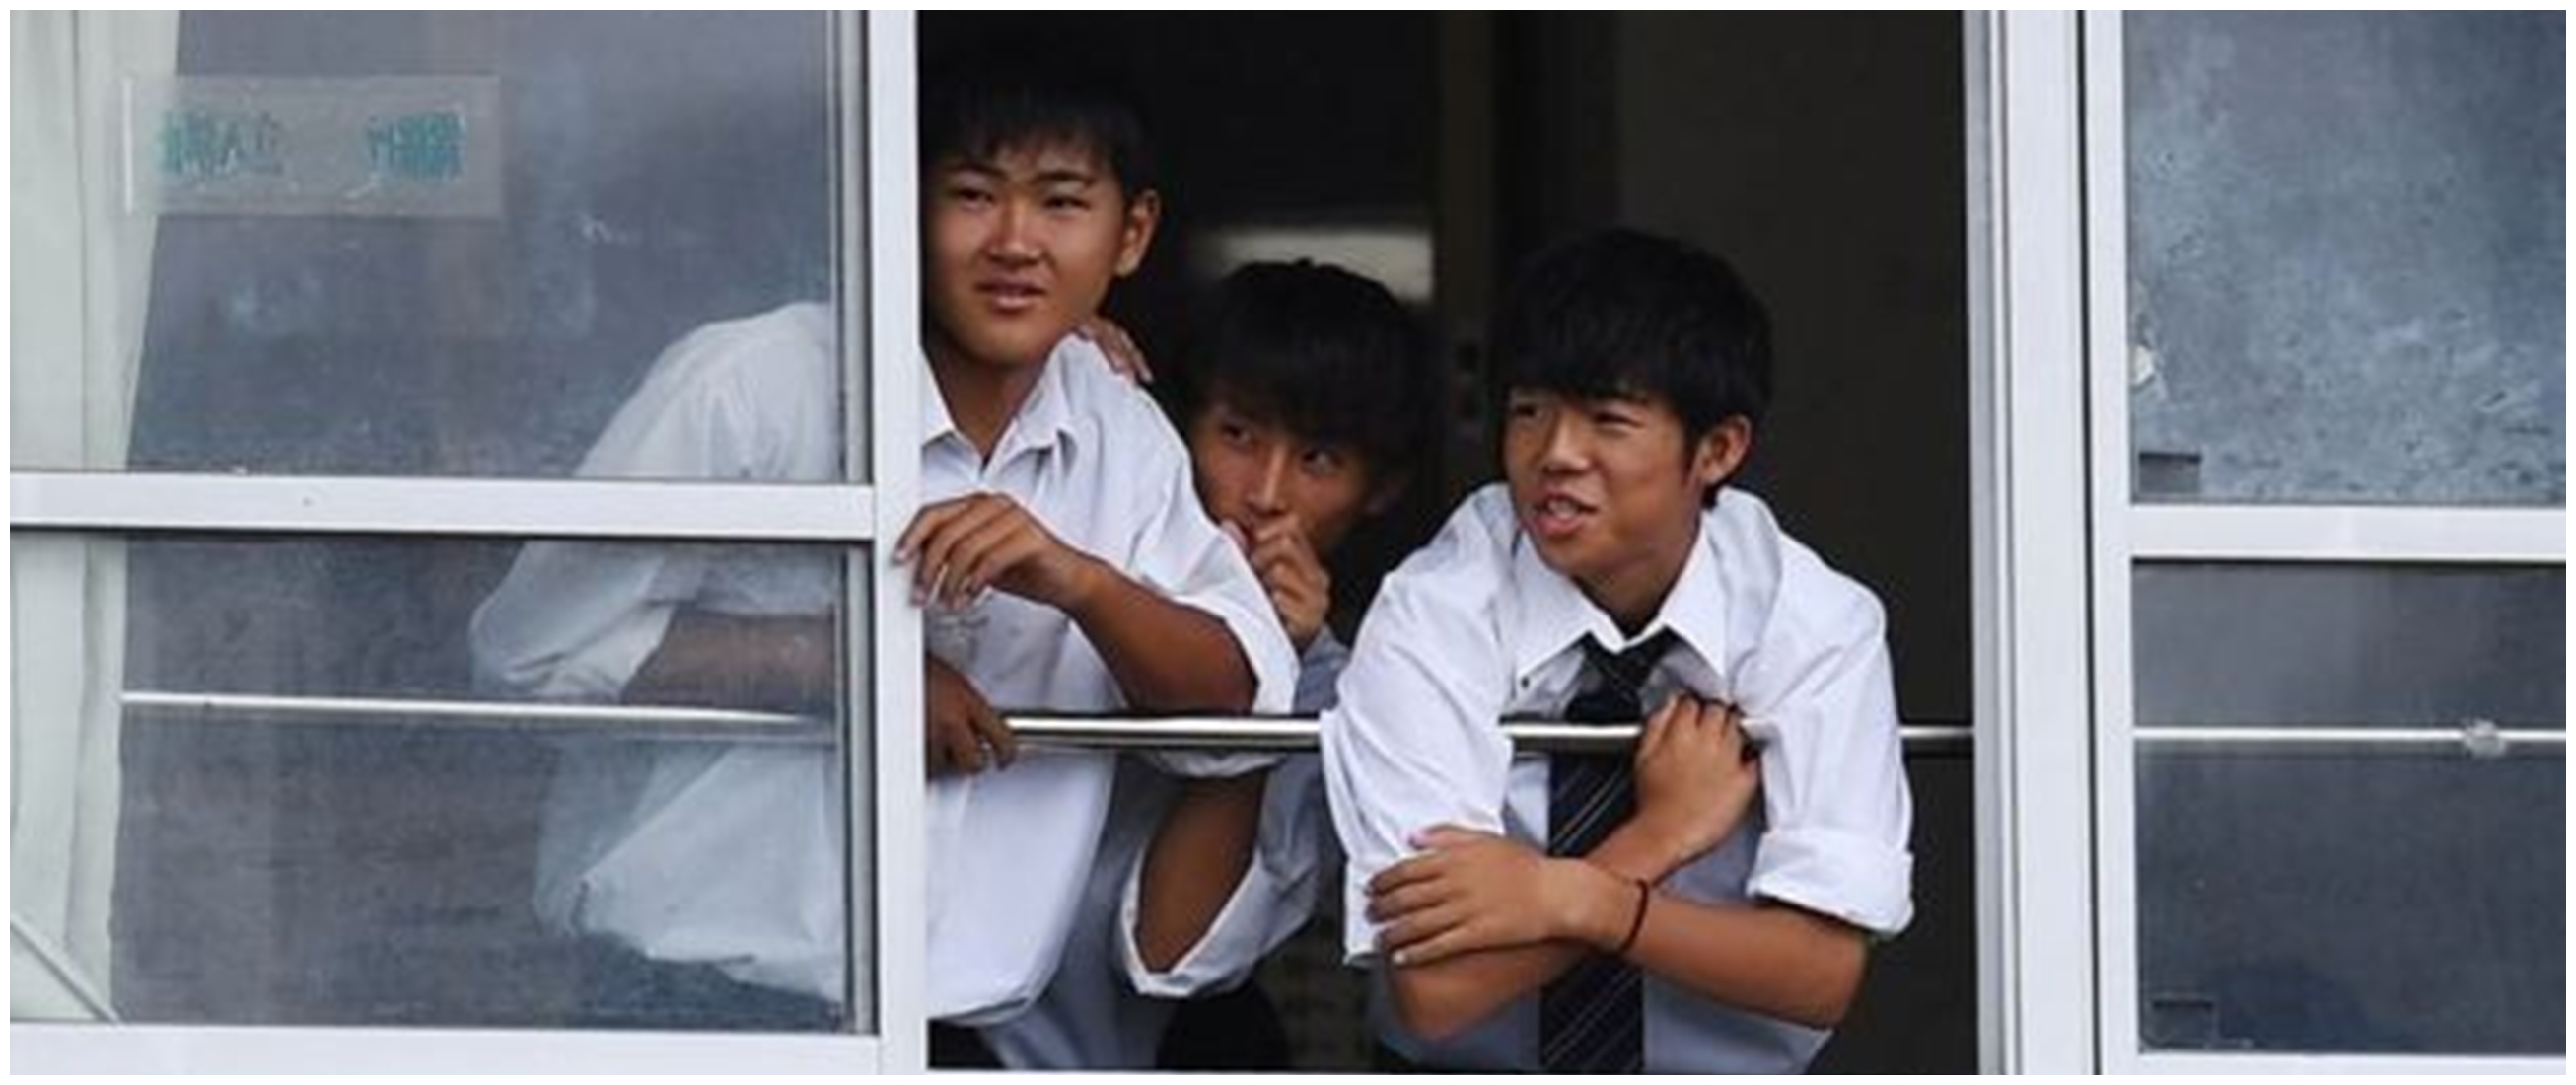 Fenomena di Jepang anak makin malas ke sekolah, ini 5 faktanya